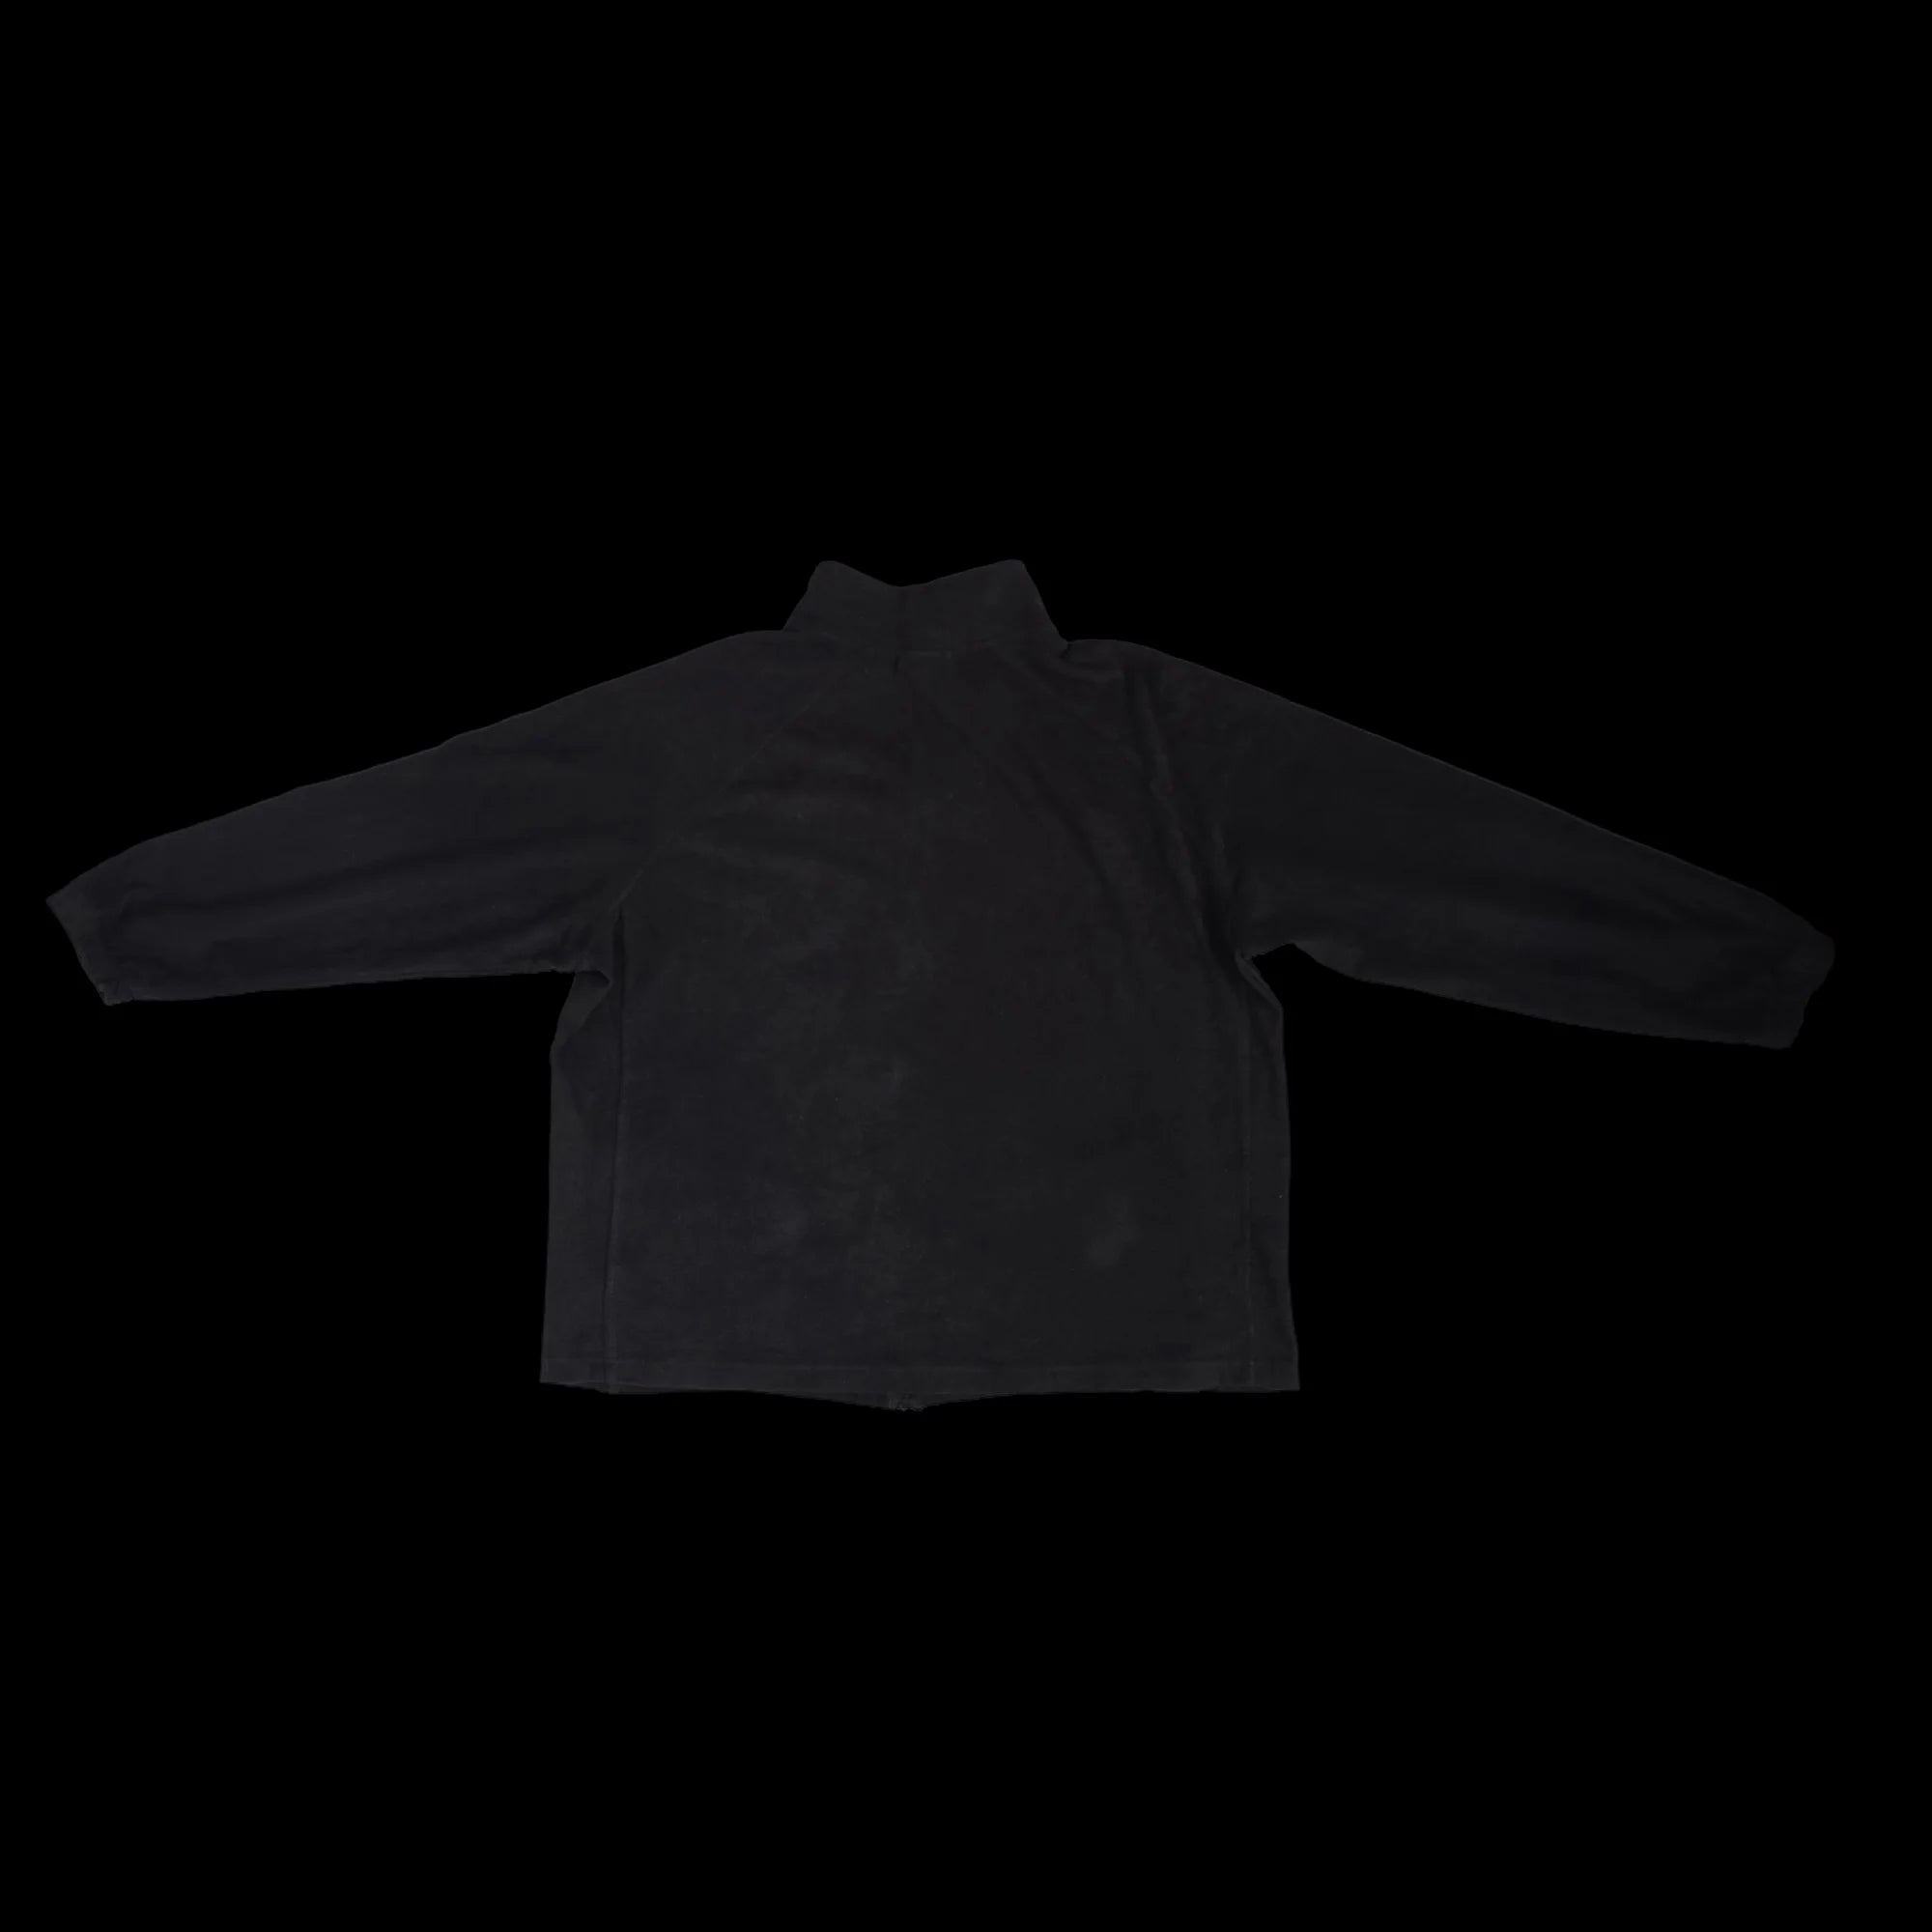 Unisex Starter Black Fleece Jacket UK XL - Coats & Jackets